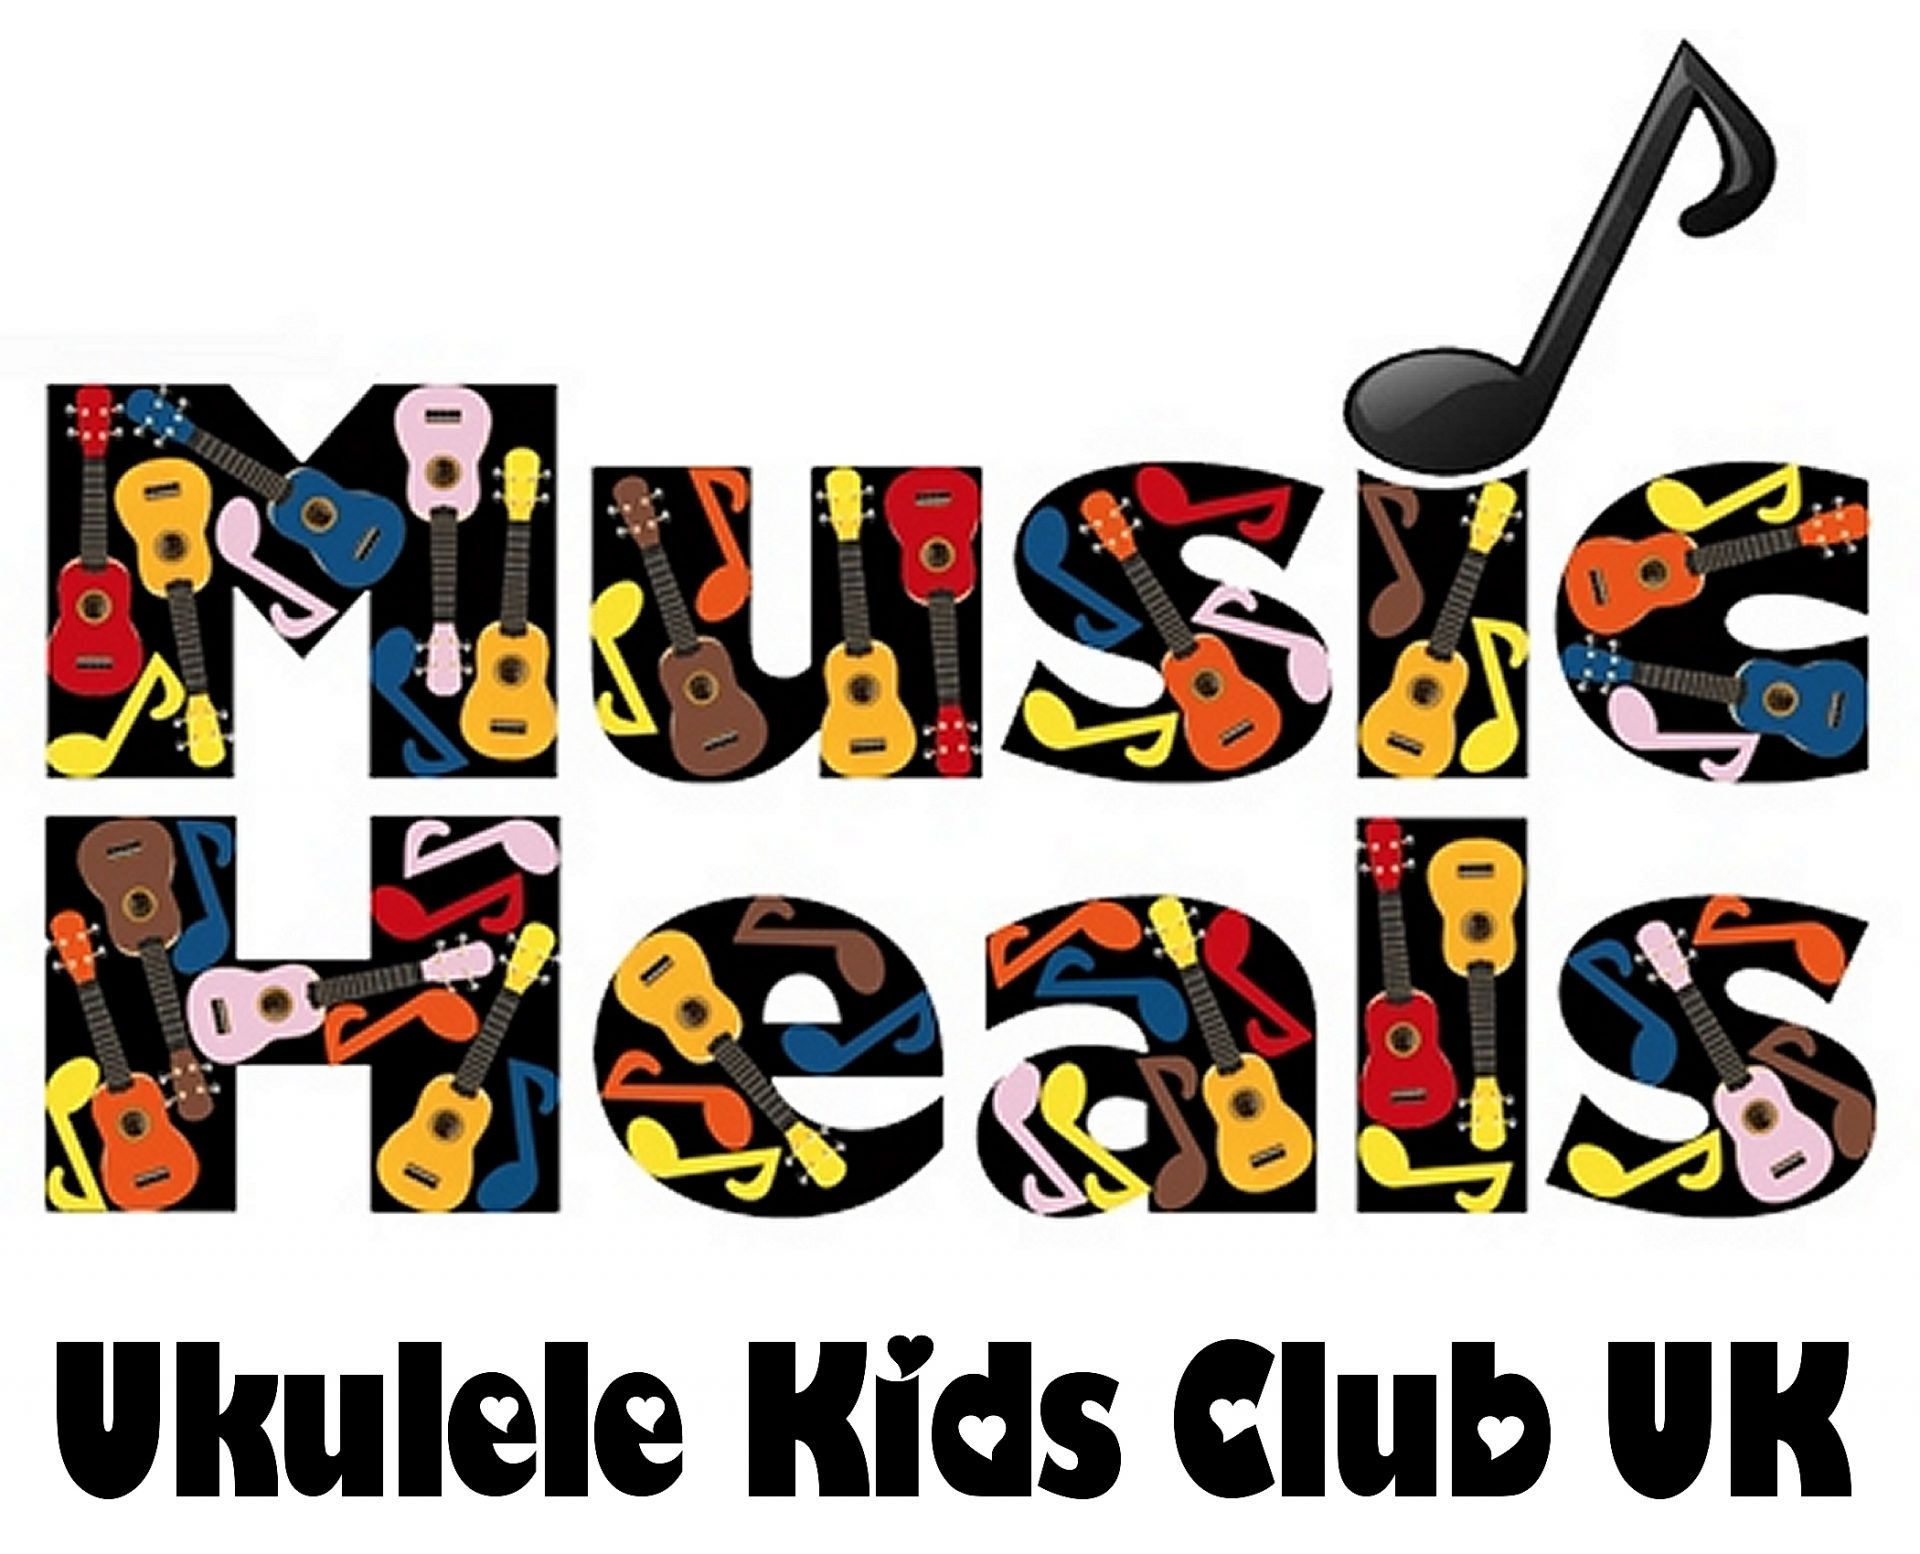 Ukulele Kids Club UK